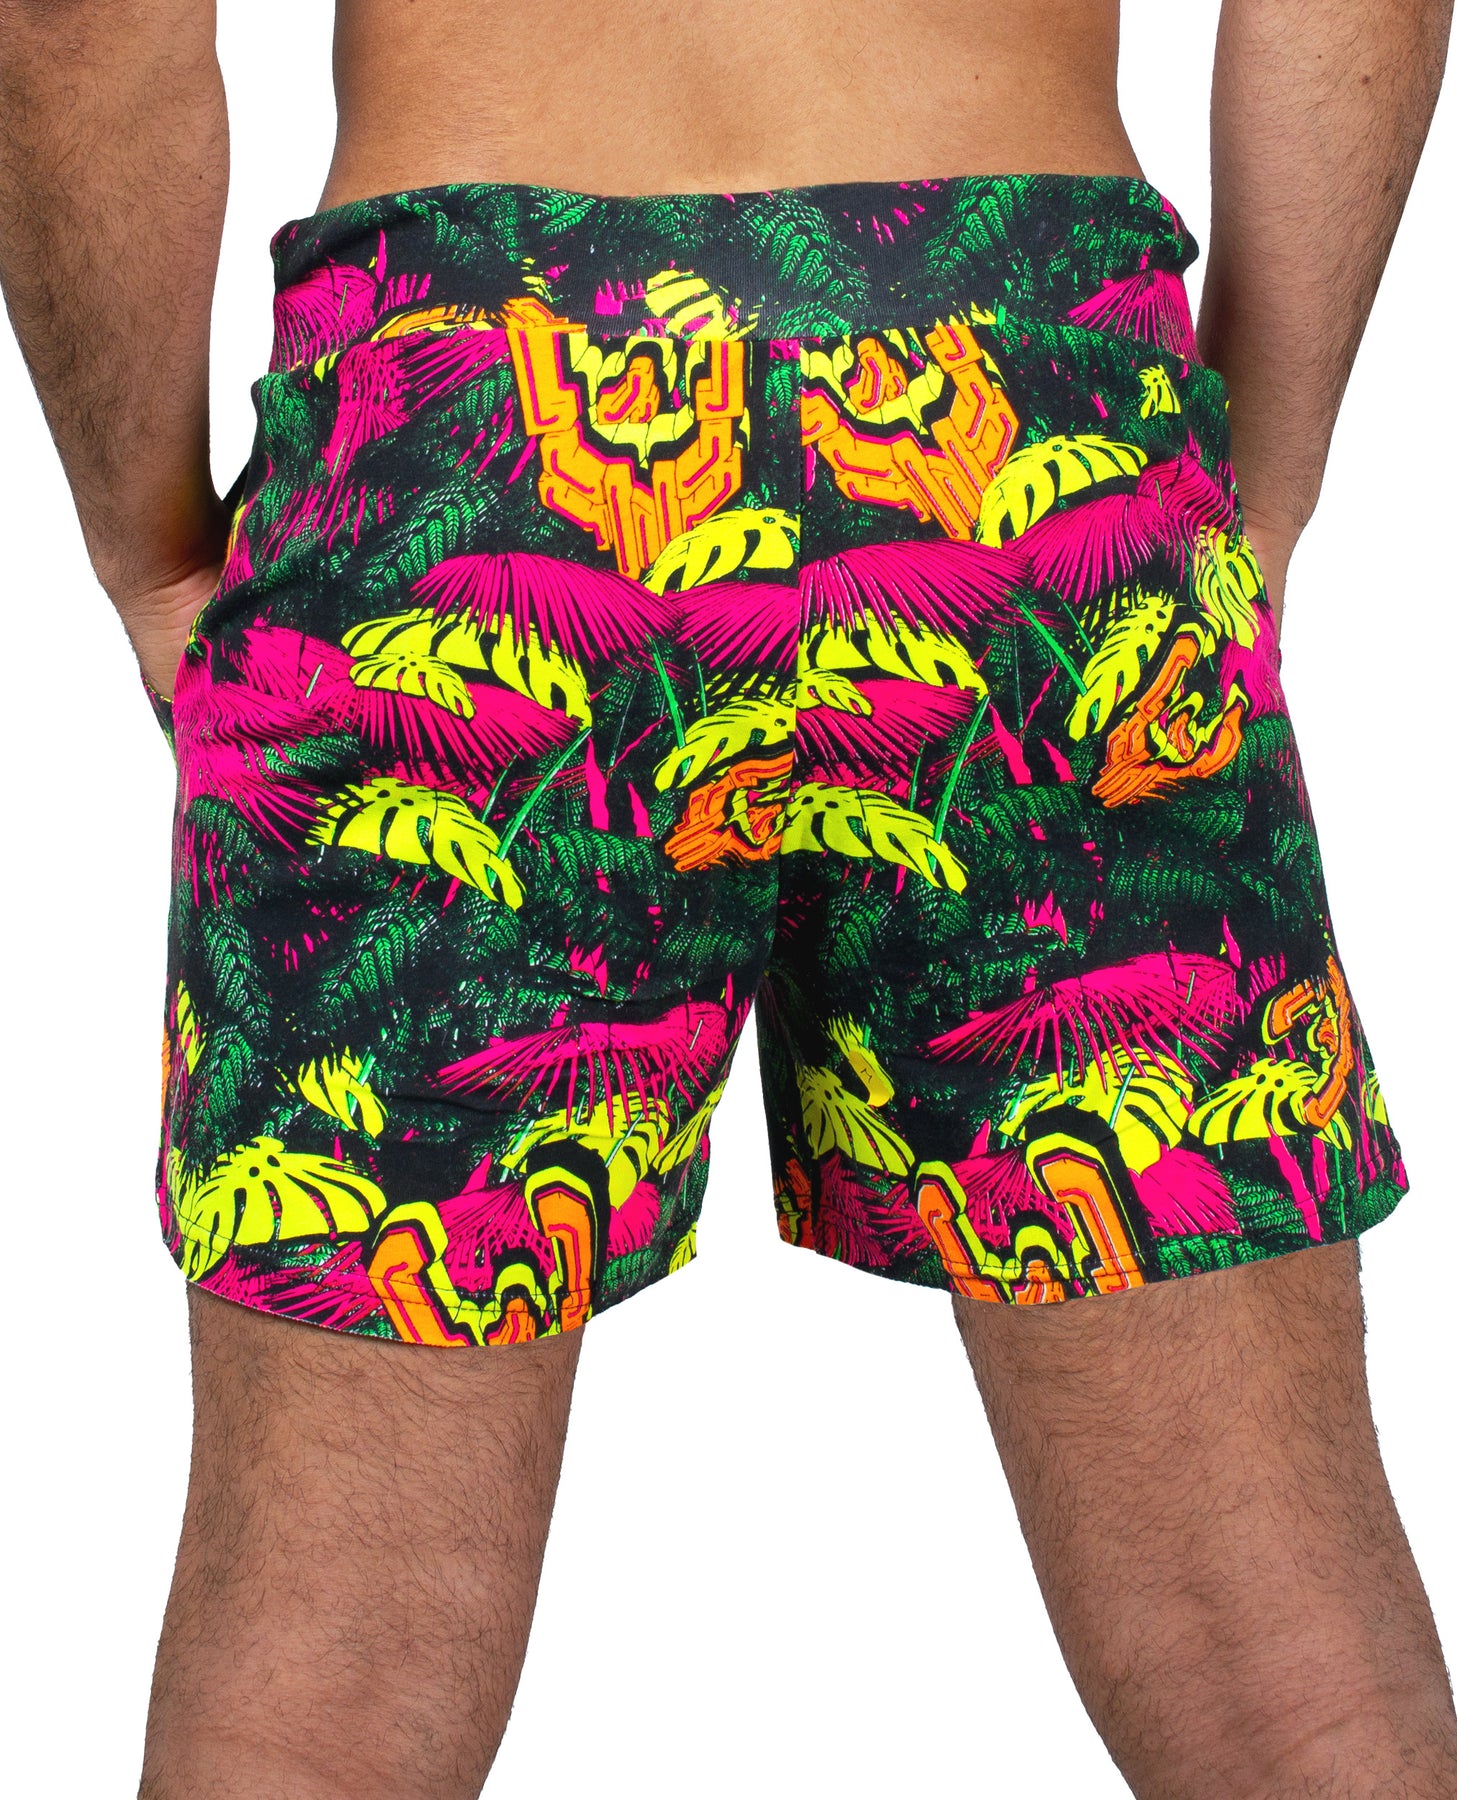 Men's Shorts by Cyberdog - Rave clothing, clubwear & festival fashion